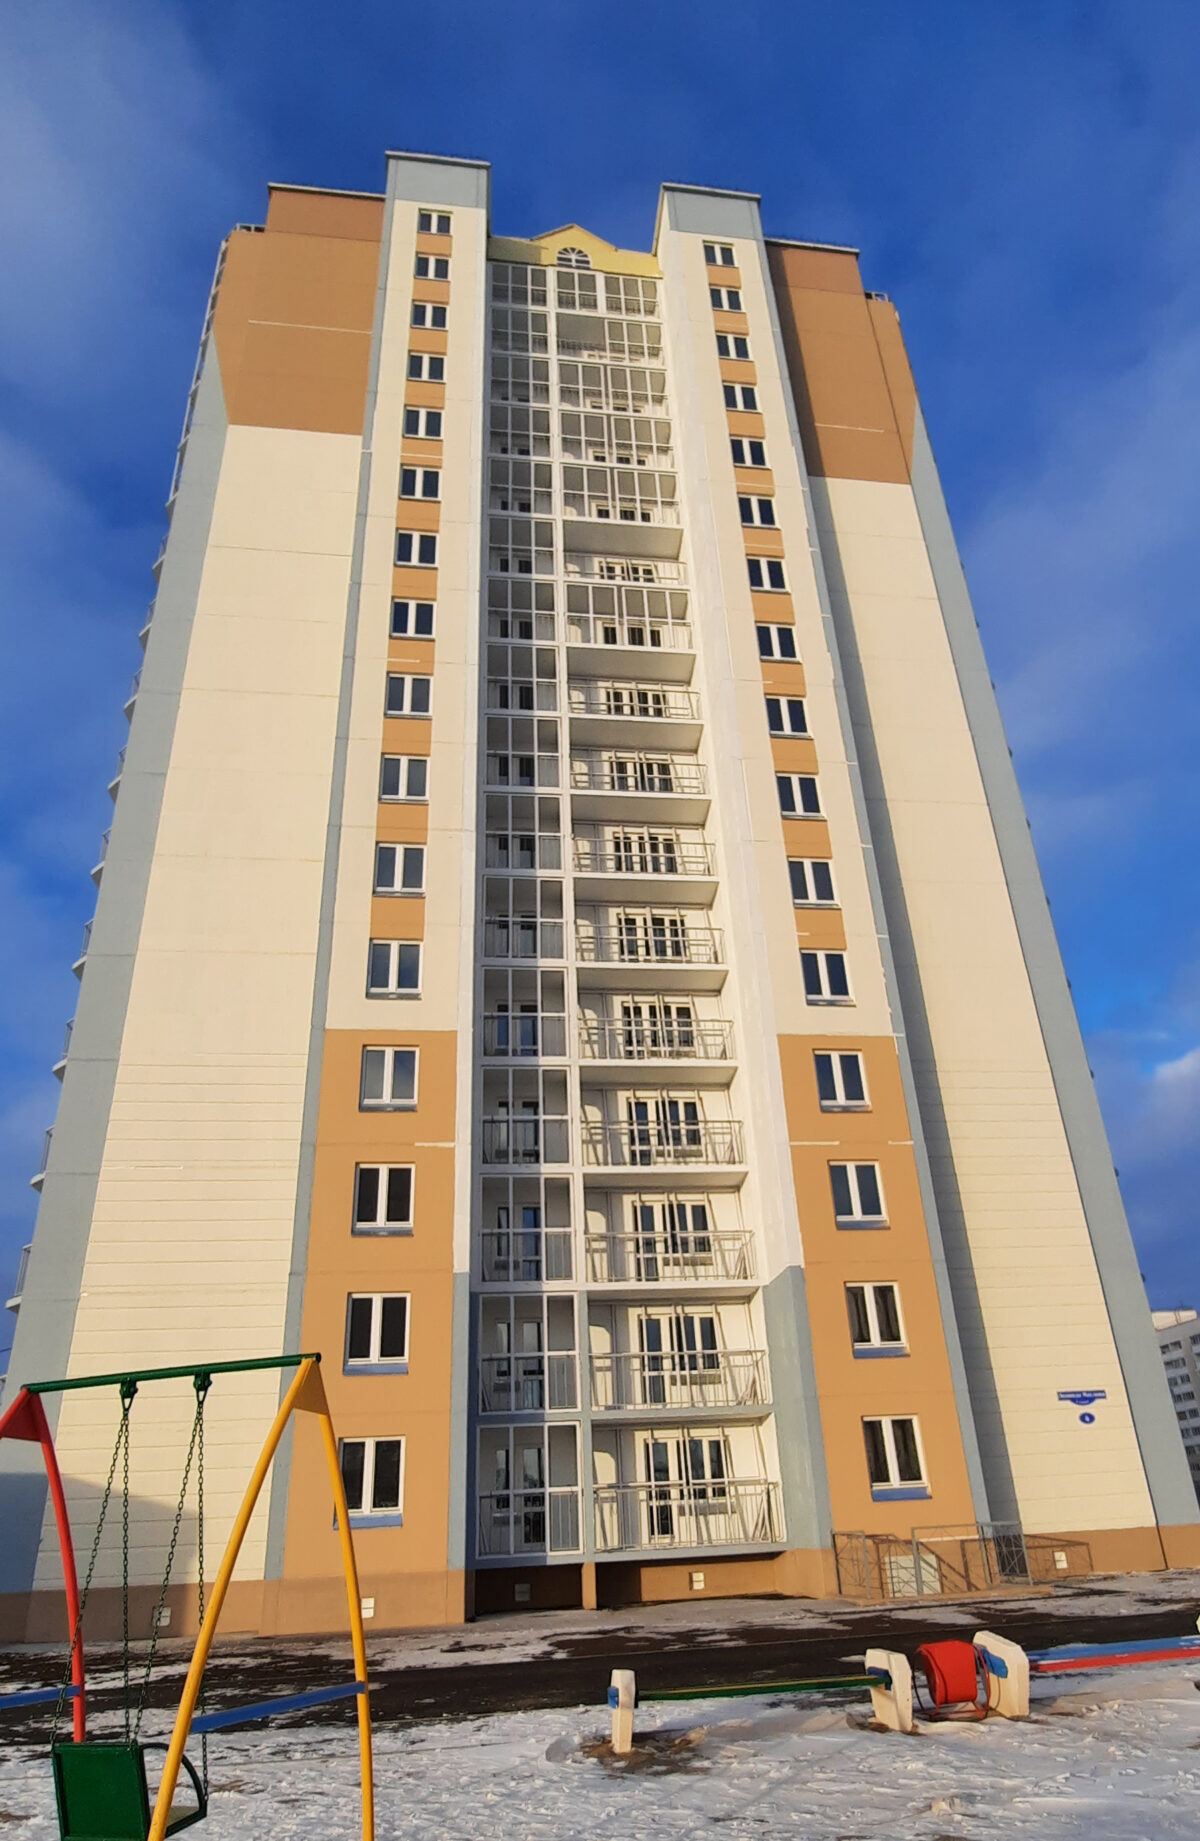 У «Пиратского острова» в Омске сдали 16-этажный дом #Омск #Общество #Сегодня